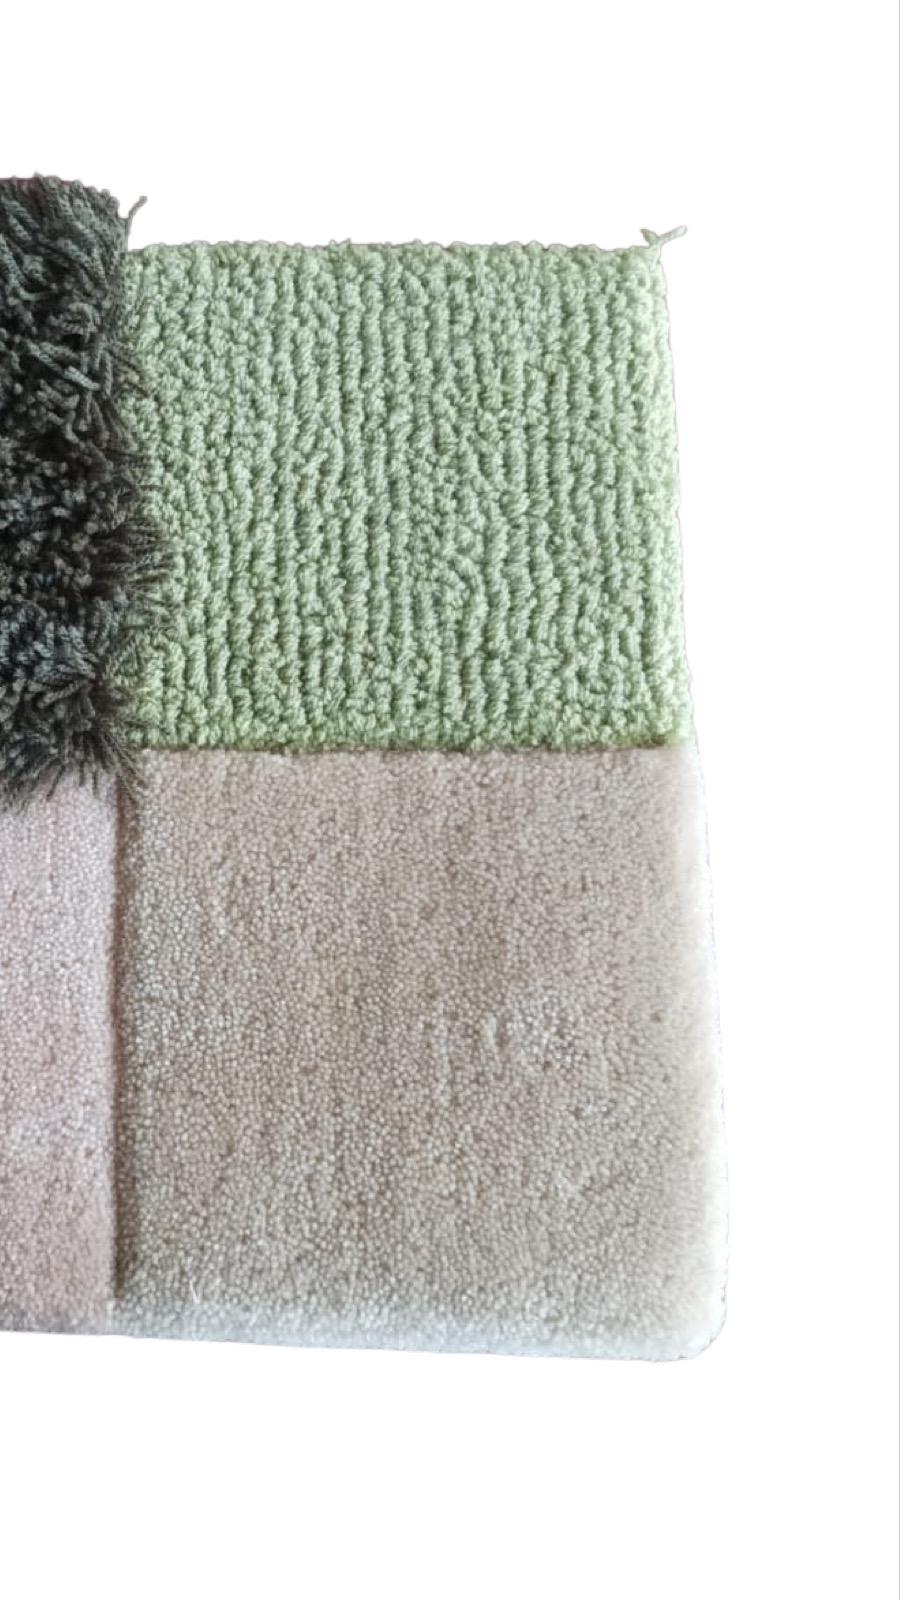 Pour améliorer notre service, nous fournissons désormais à nos clients sur 1stdibs des échantillons de tapis. Nous vous fournirons la meilleure qualité de laine acrylique et de méthodes. Le fil acrylique utilisé pour fabriquer nos tapis est sûr et